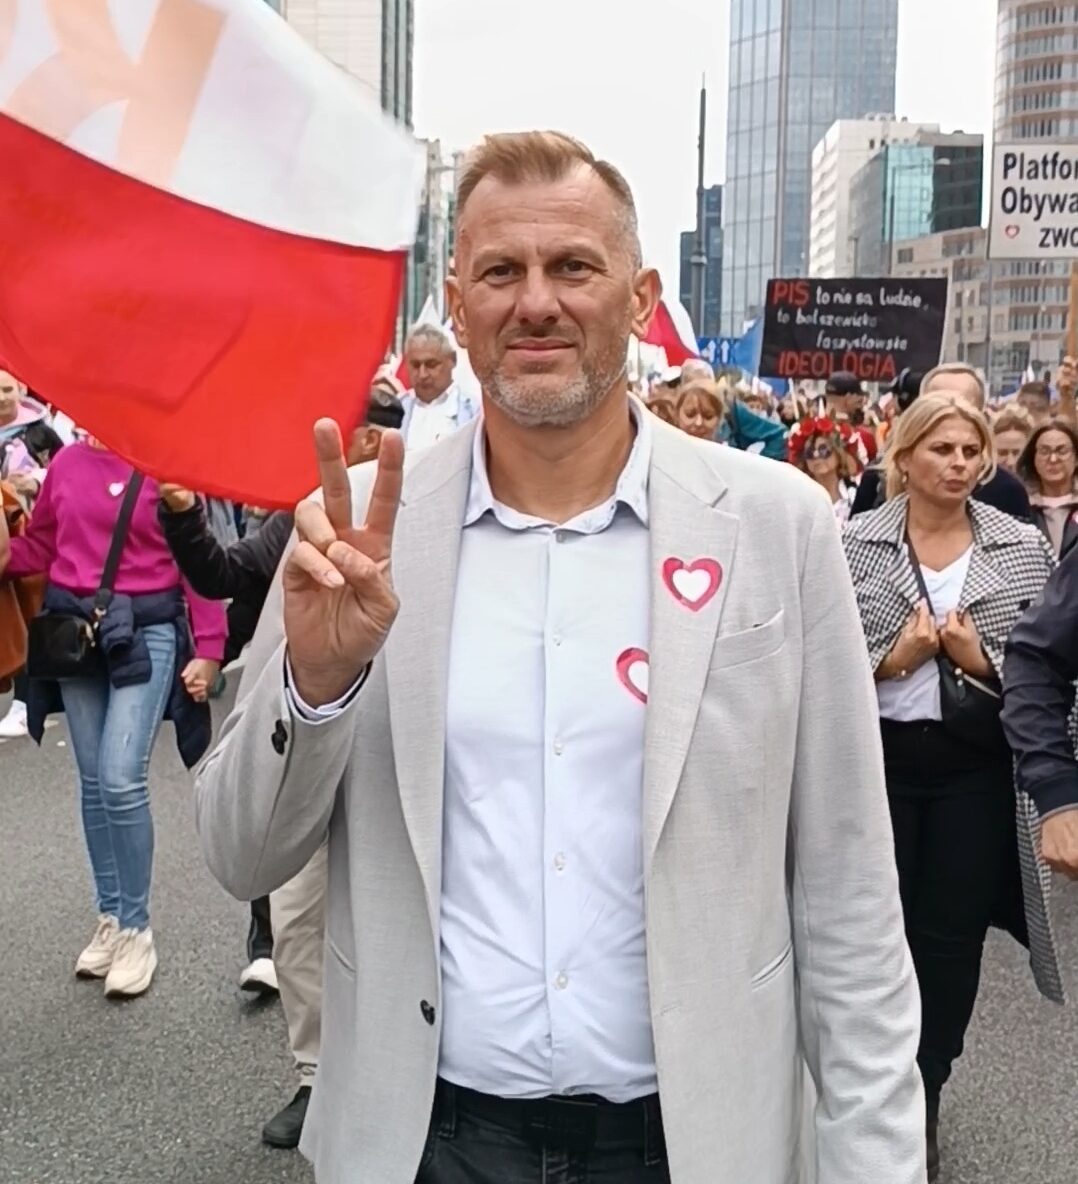 Siła w jedności, Polska w naszych sercach! #MarszMilionaSerc